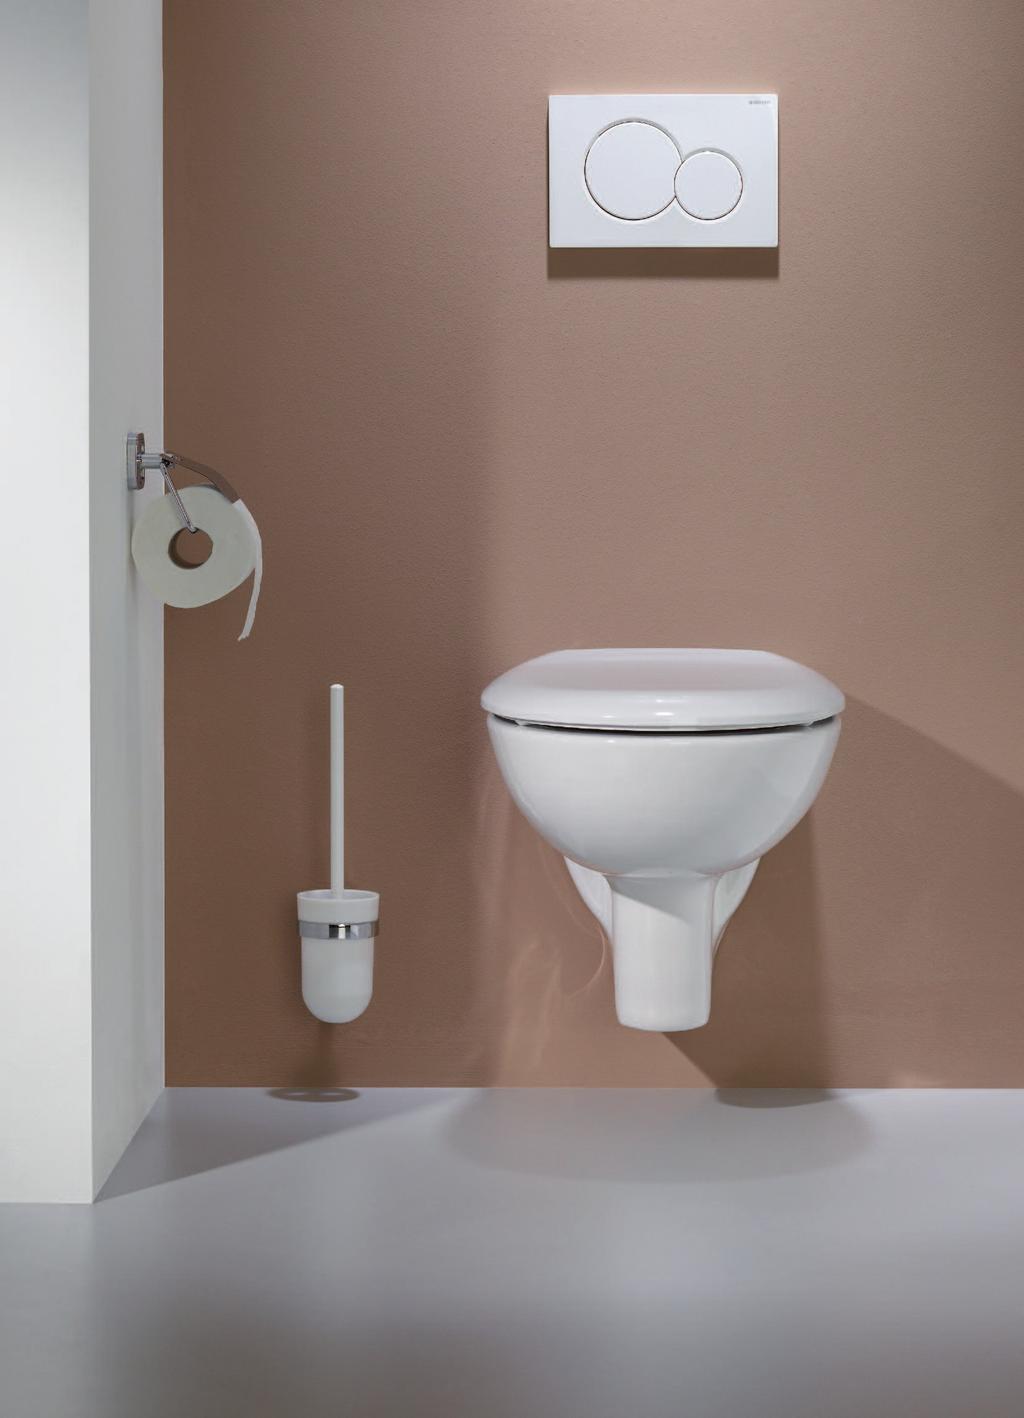 Waschtisch-, WC- und Urinal-Zubehör: Concept Concept Zubehör Perfekt für Waschtisch, WC & Urinal Bei der Renovierung und Modernisierung eines Badezimmers sind gerade beim Thema Zubehör universelle